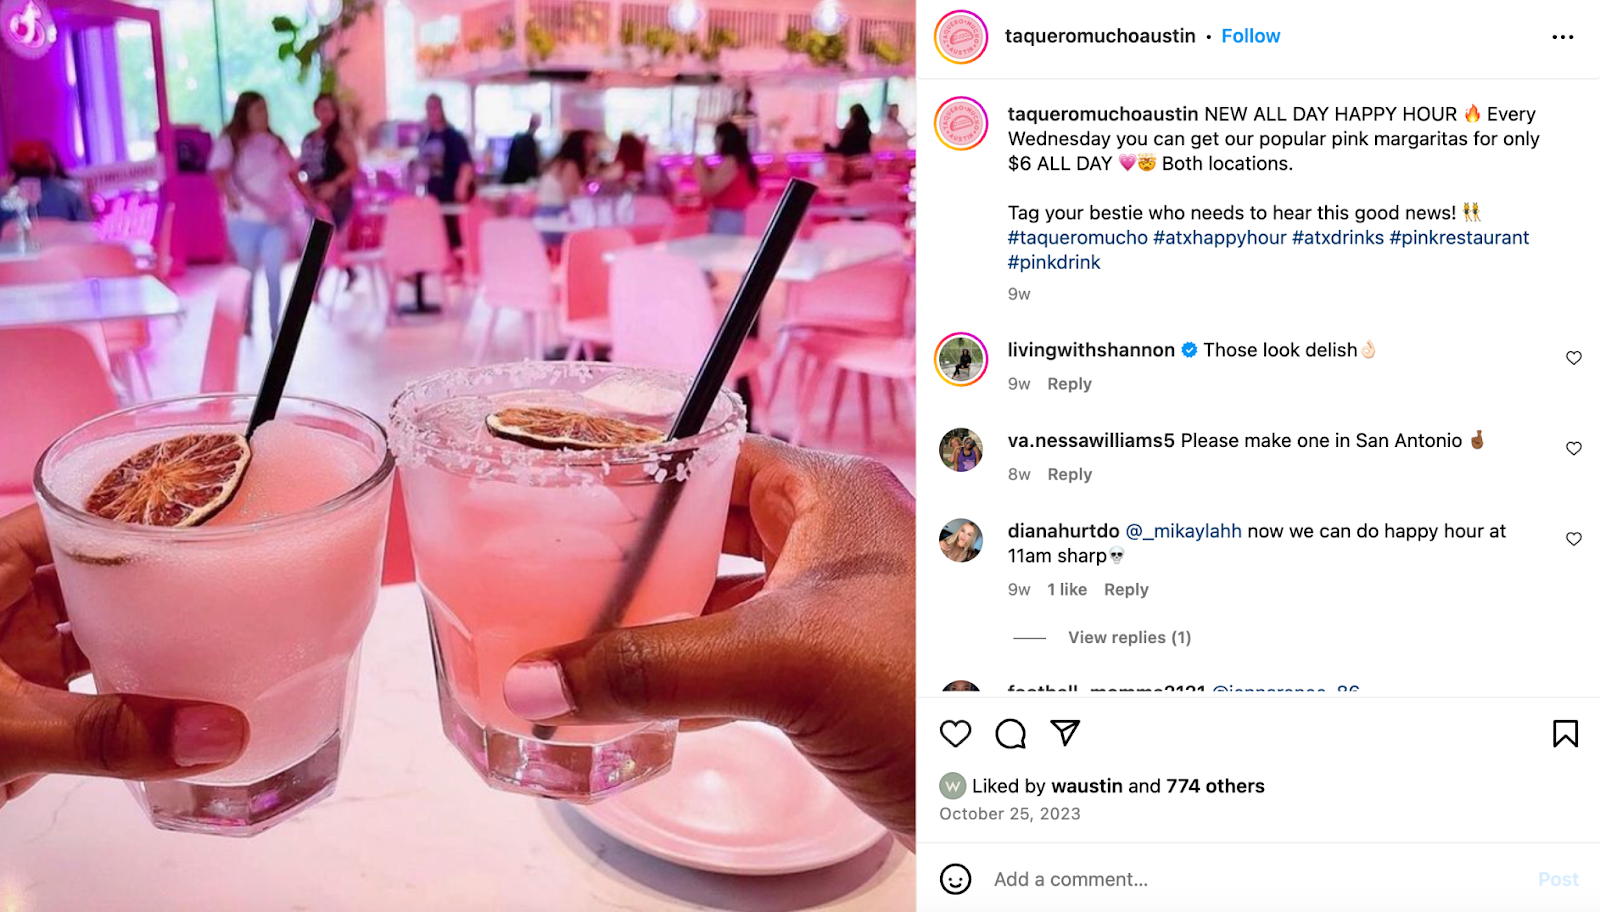 أفكار تسويقية للمطاعم: تضفي شركة Taquero Mucho، ومقرها أوستن، لونها الوردي المميز على كل شيء بدءًا من طاولات الطعام والكراسي وحتى المارجريتا.